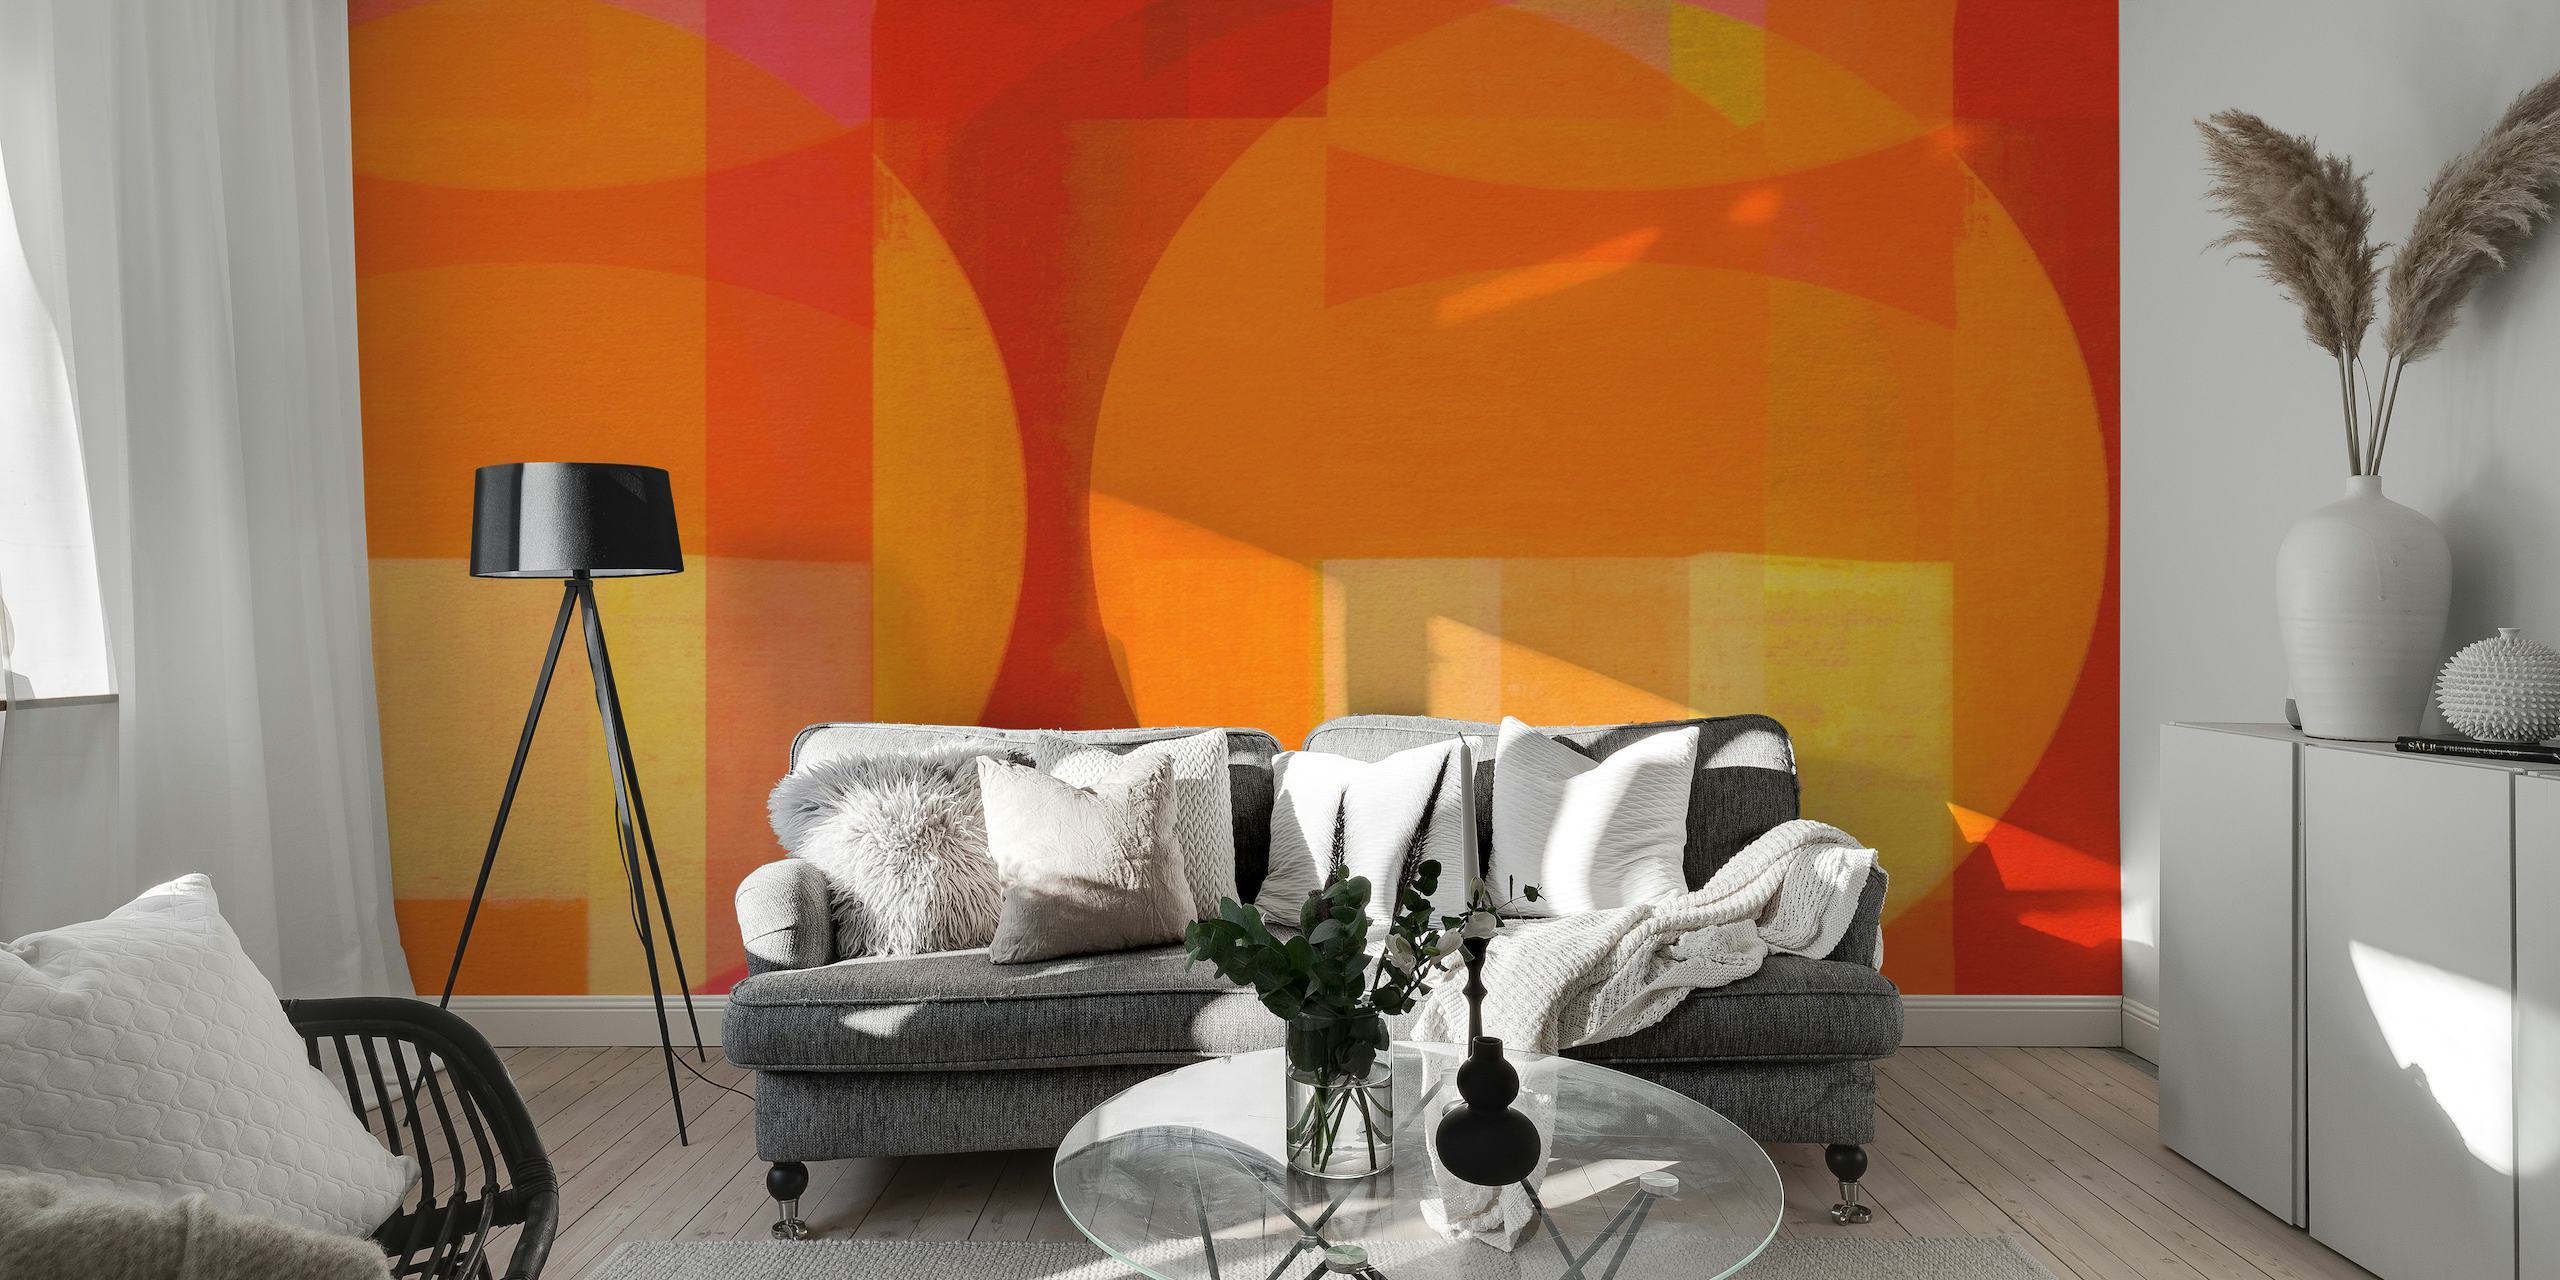 Abstrakt veggmaleri i Bauhaus-stil i en levende blanding av røde, oransje og gule geometriske former.